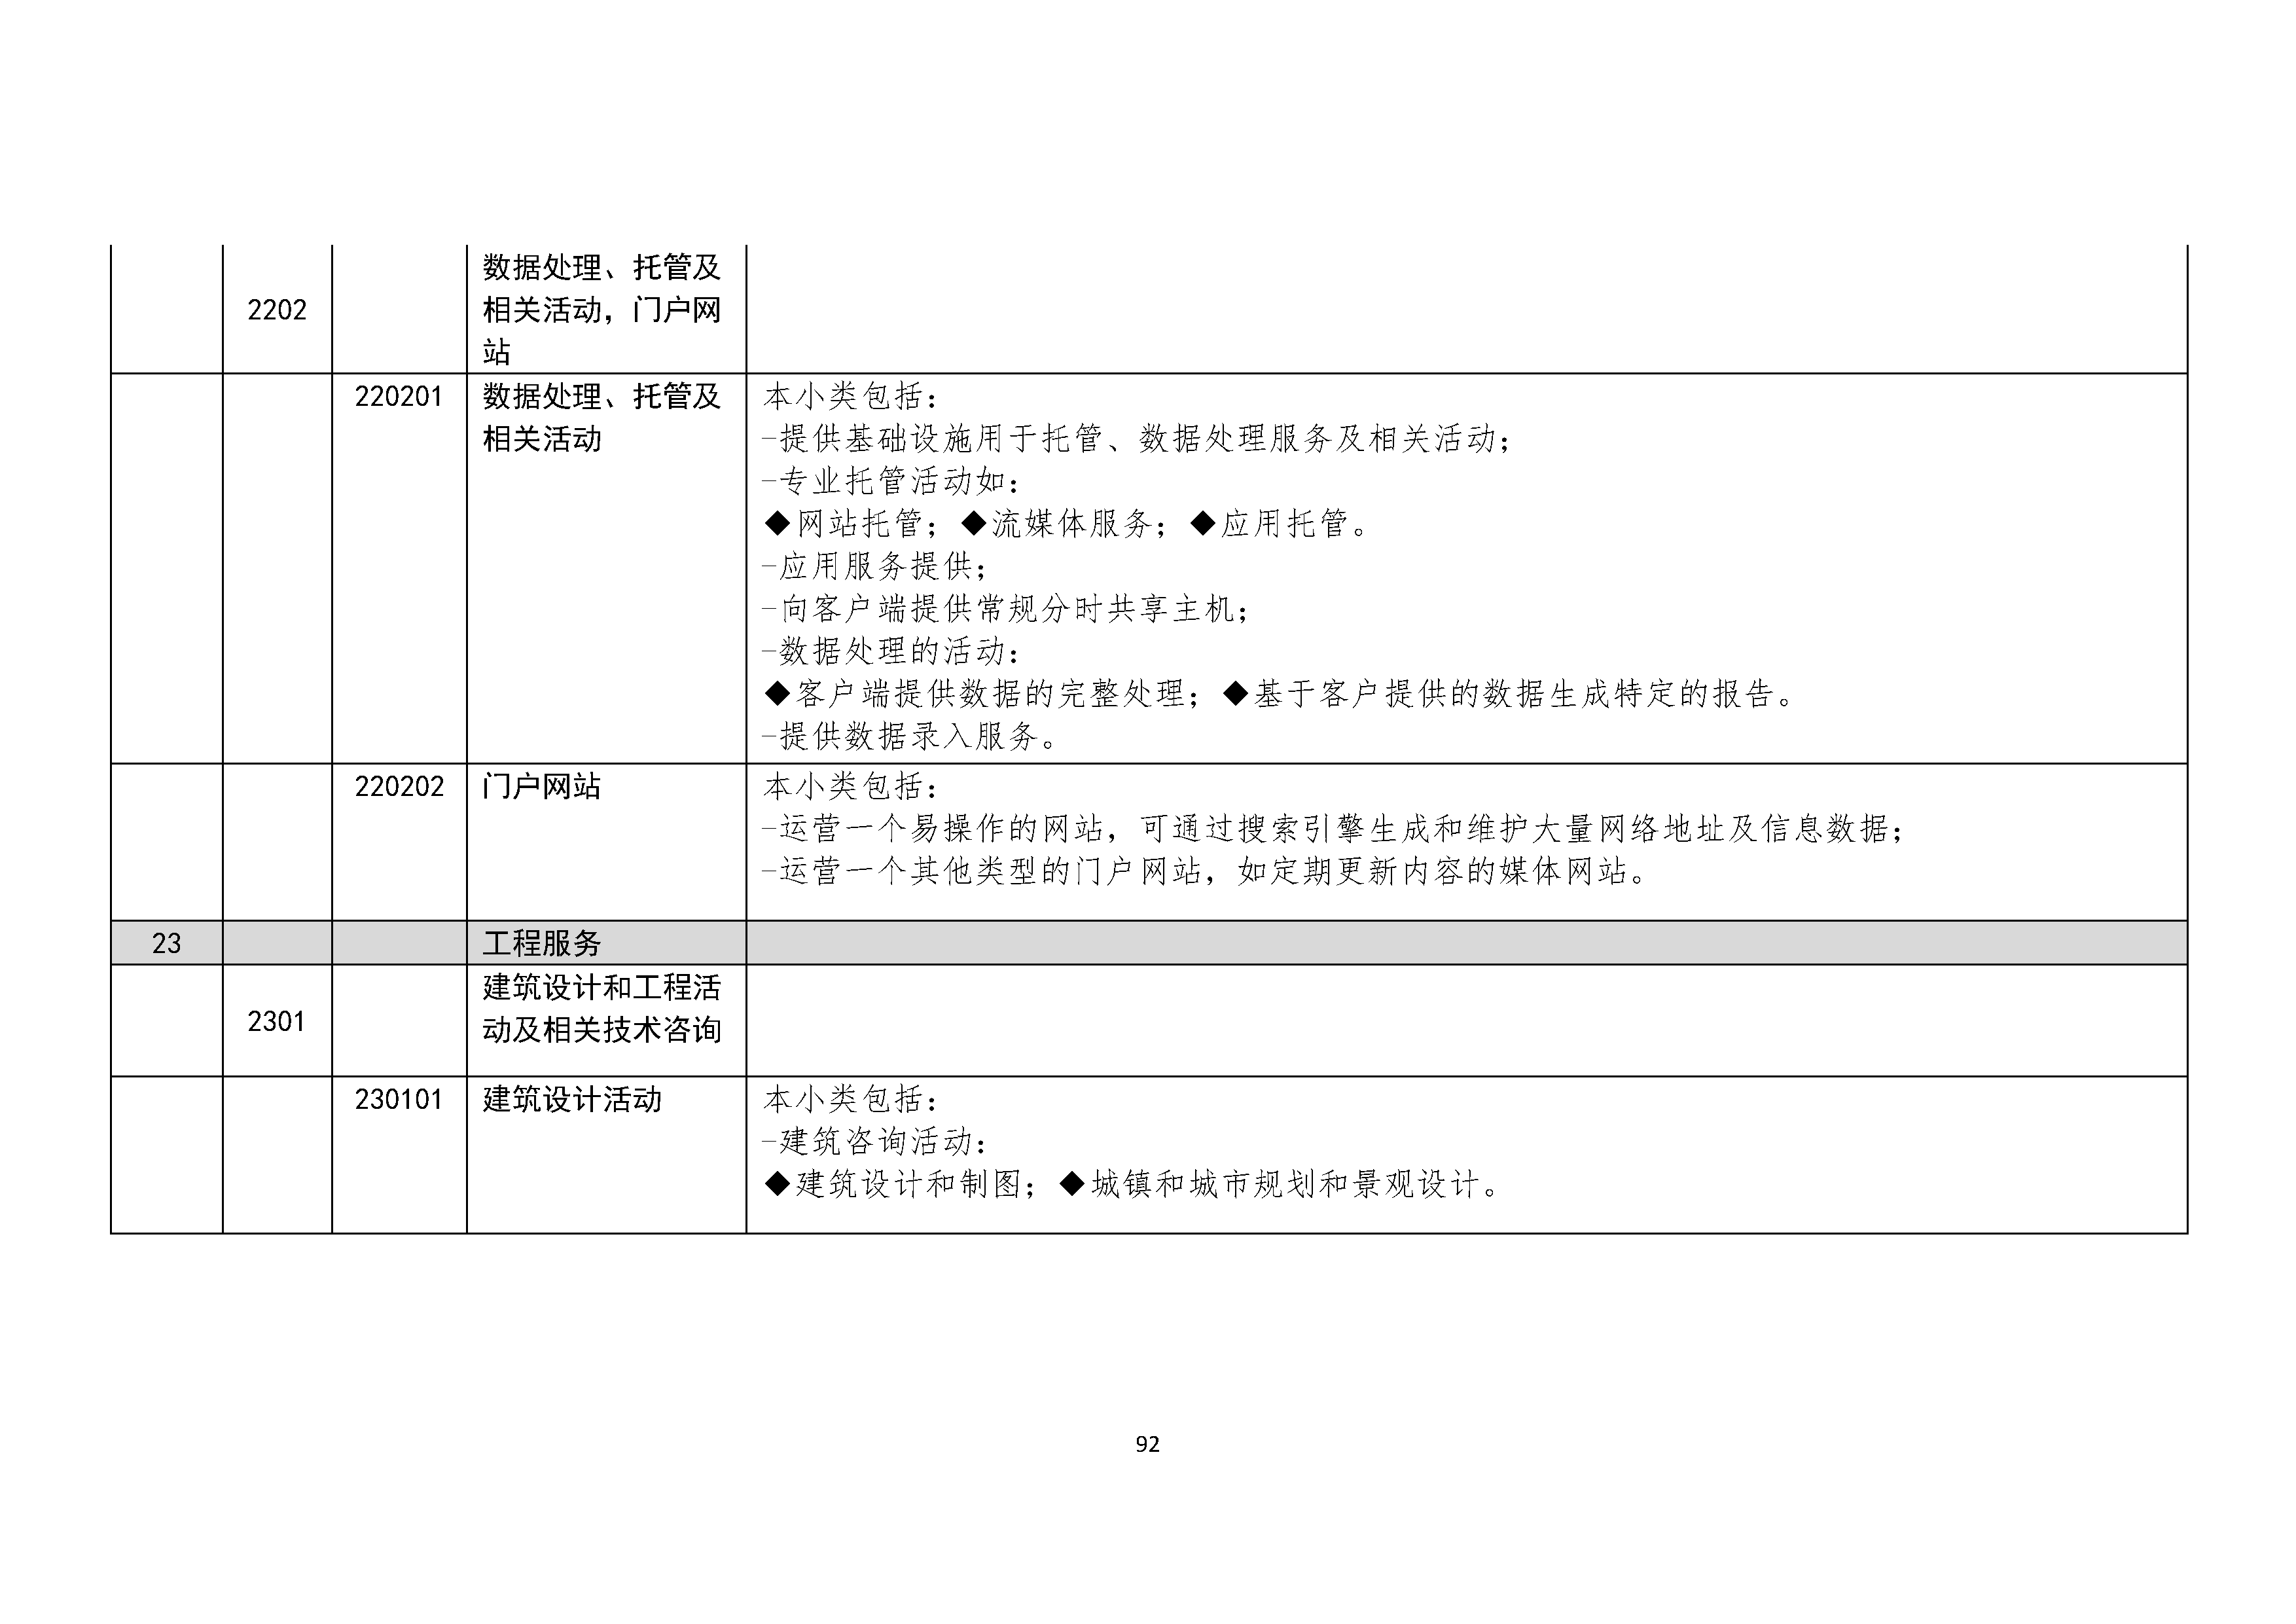 B.6《中国核能行业协会供应商评价供应商分类及产品专业范围划分规定》_页面_093.png